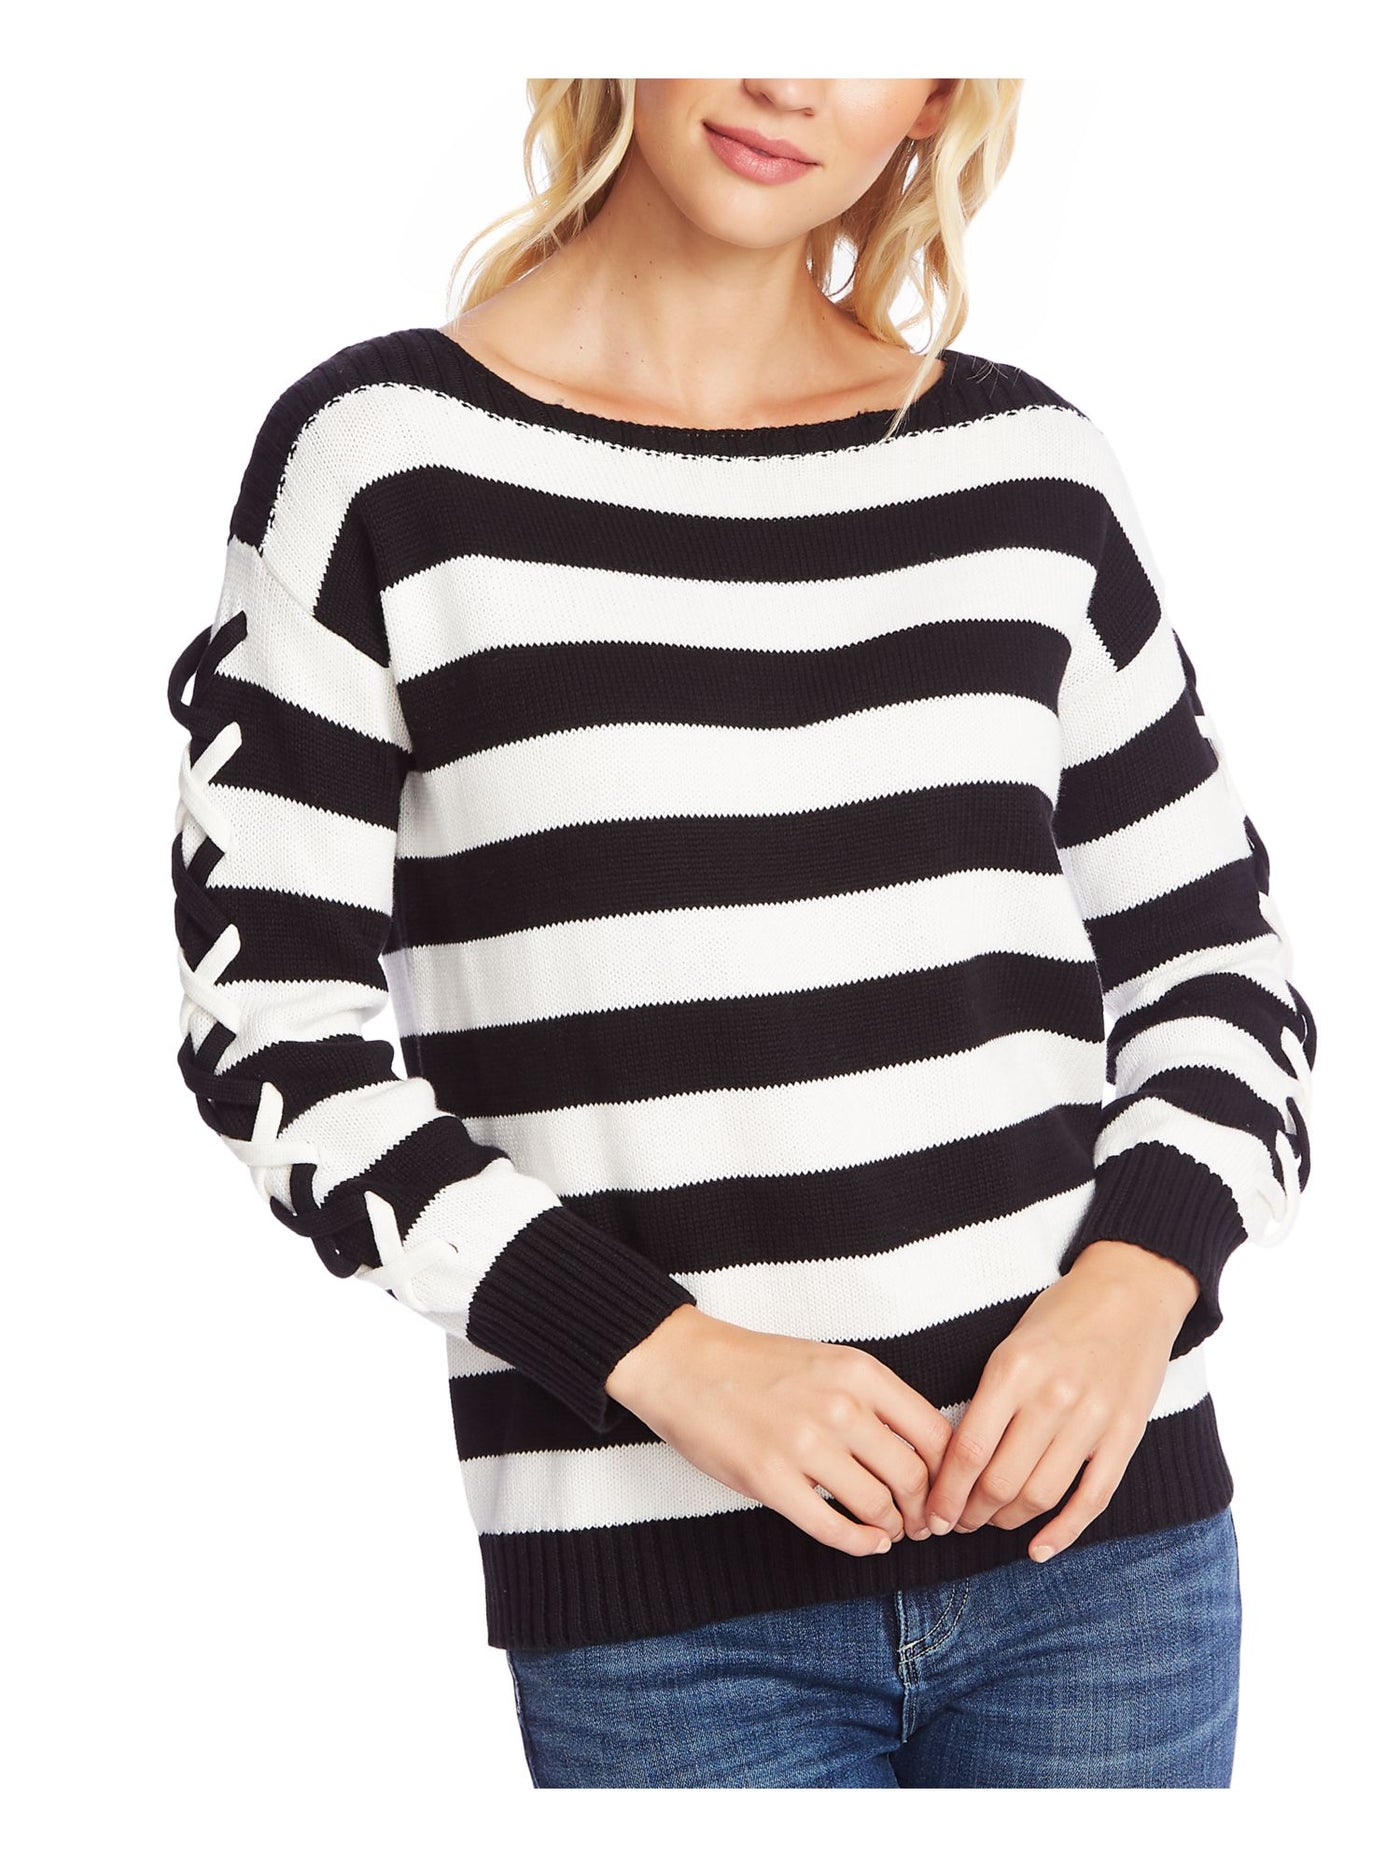 CECE Womens Long Sleeve Boat Neck Sweater